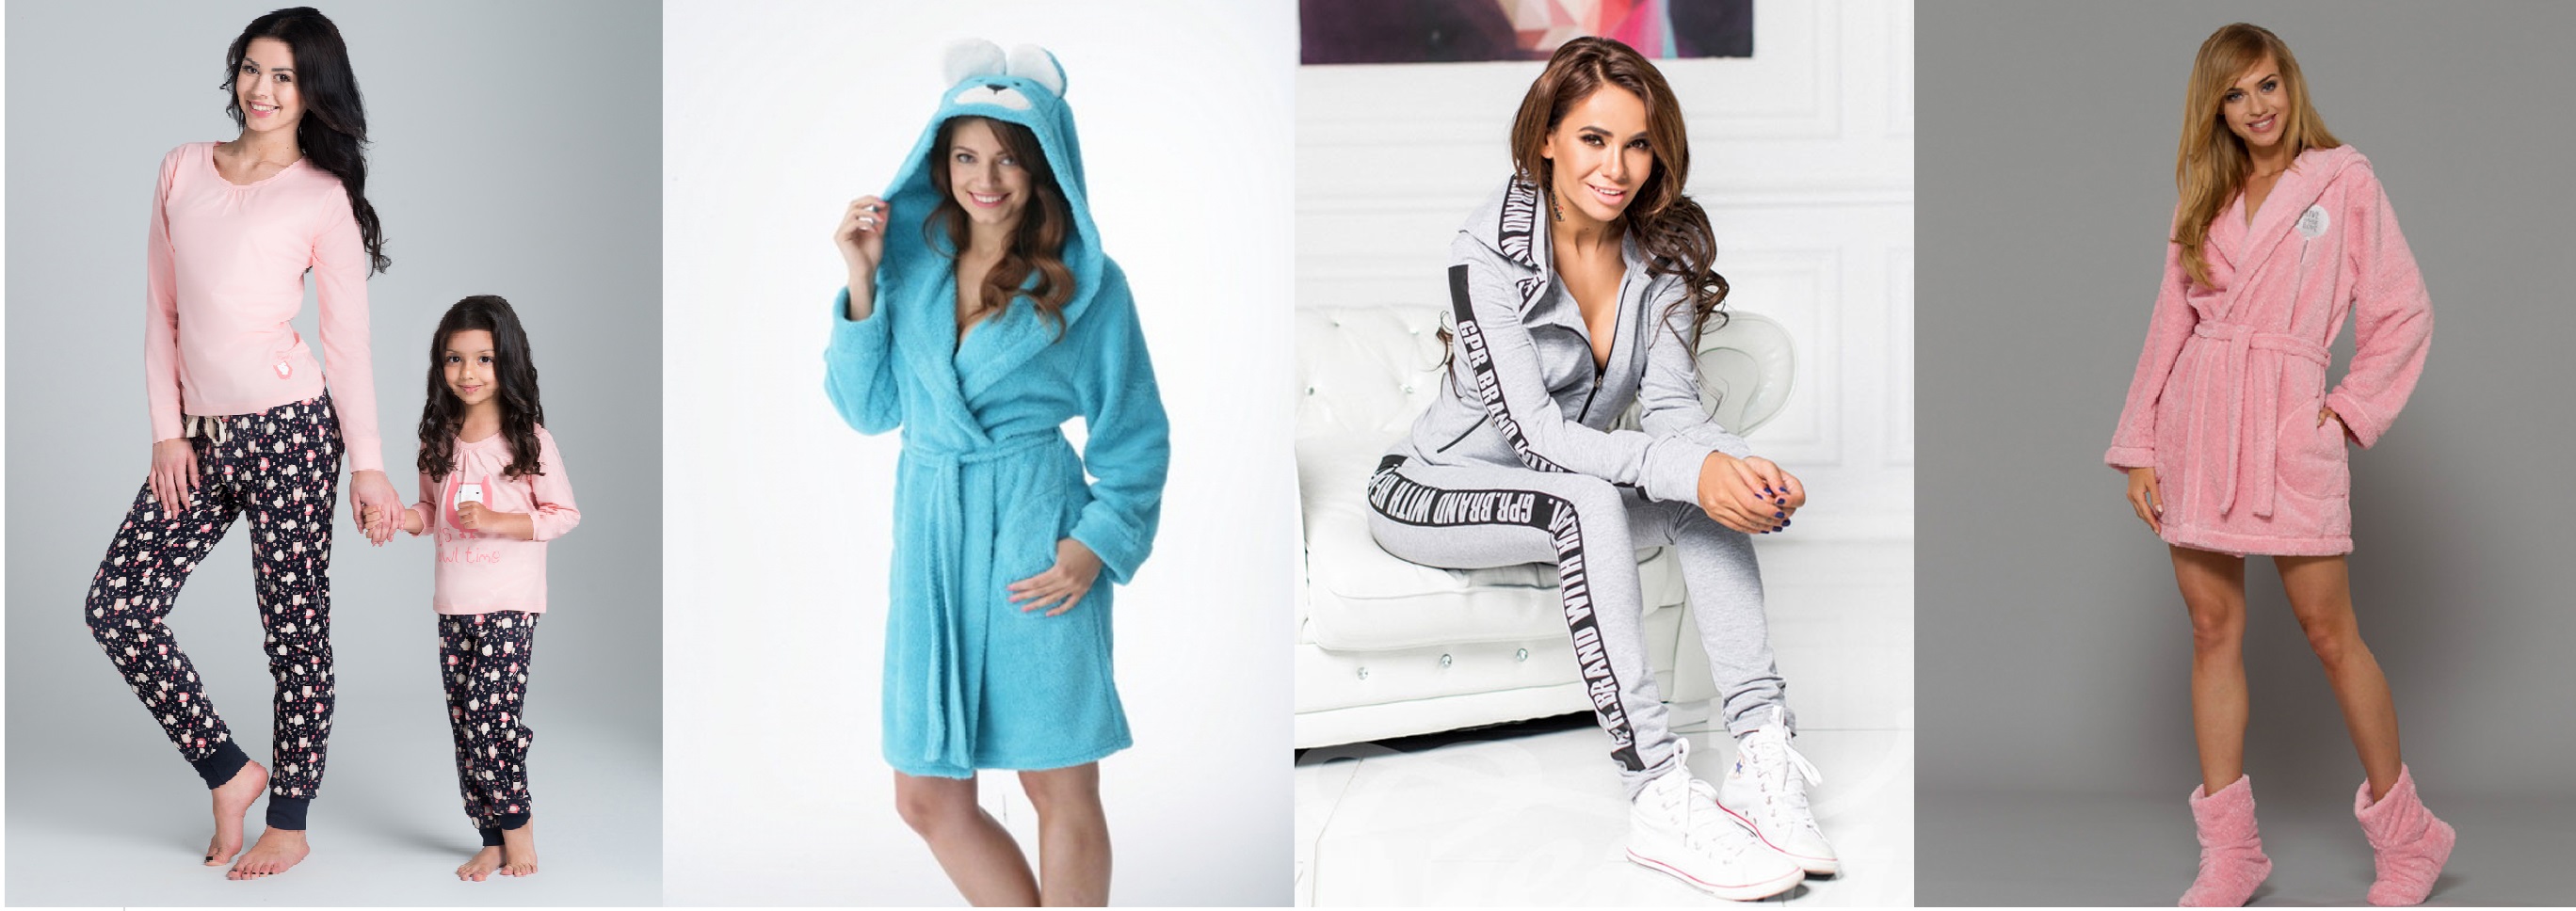 Женские пижамы халаты костюмы Rossli Dorota Gepur L&L купить интернет-магазин Киев